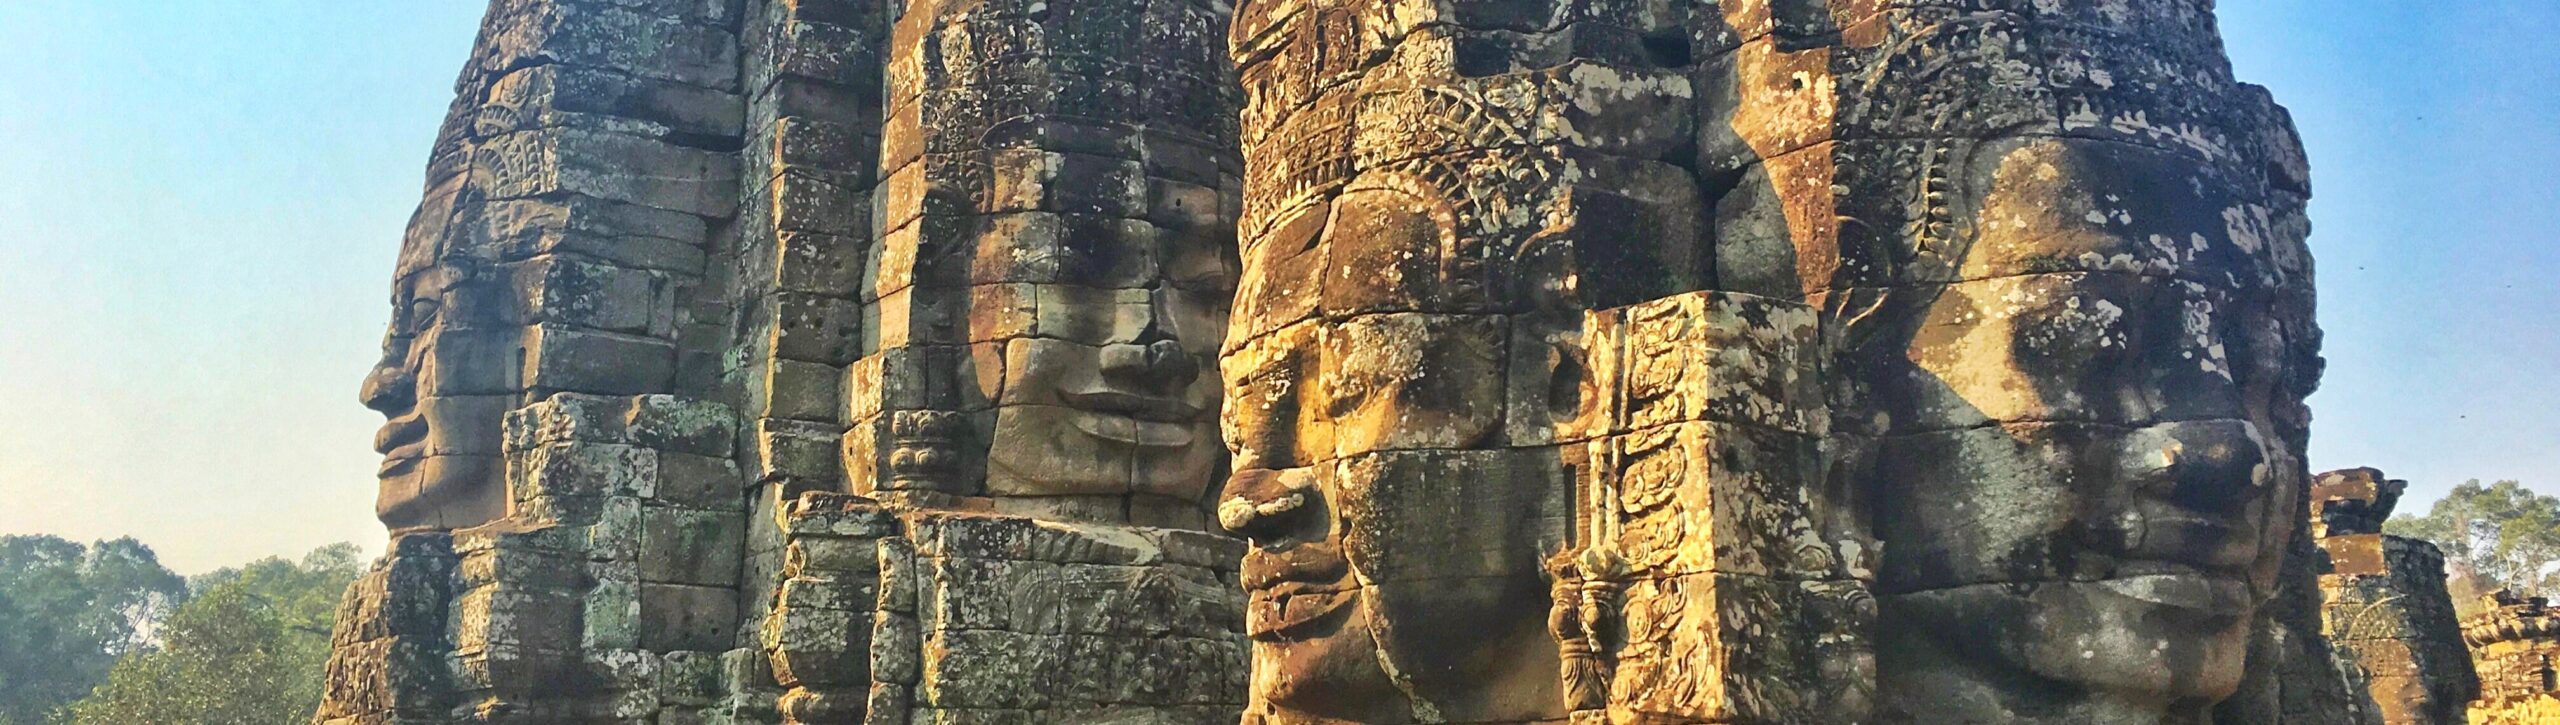 Voyage mesure Cambodge Angkor Bayon scaled